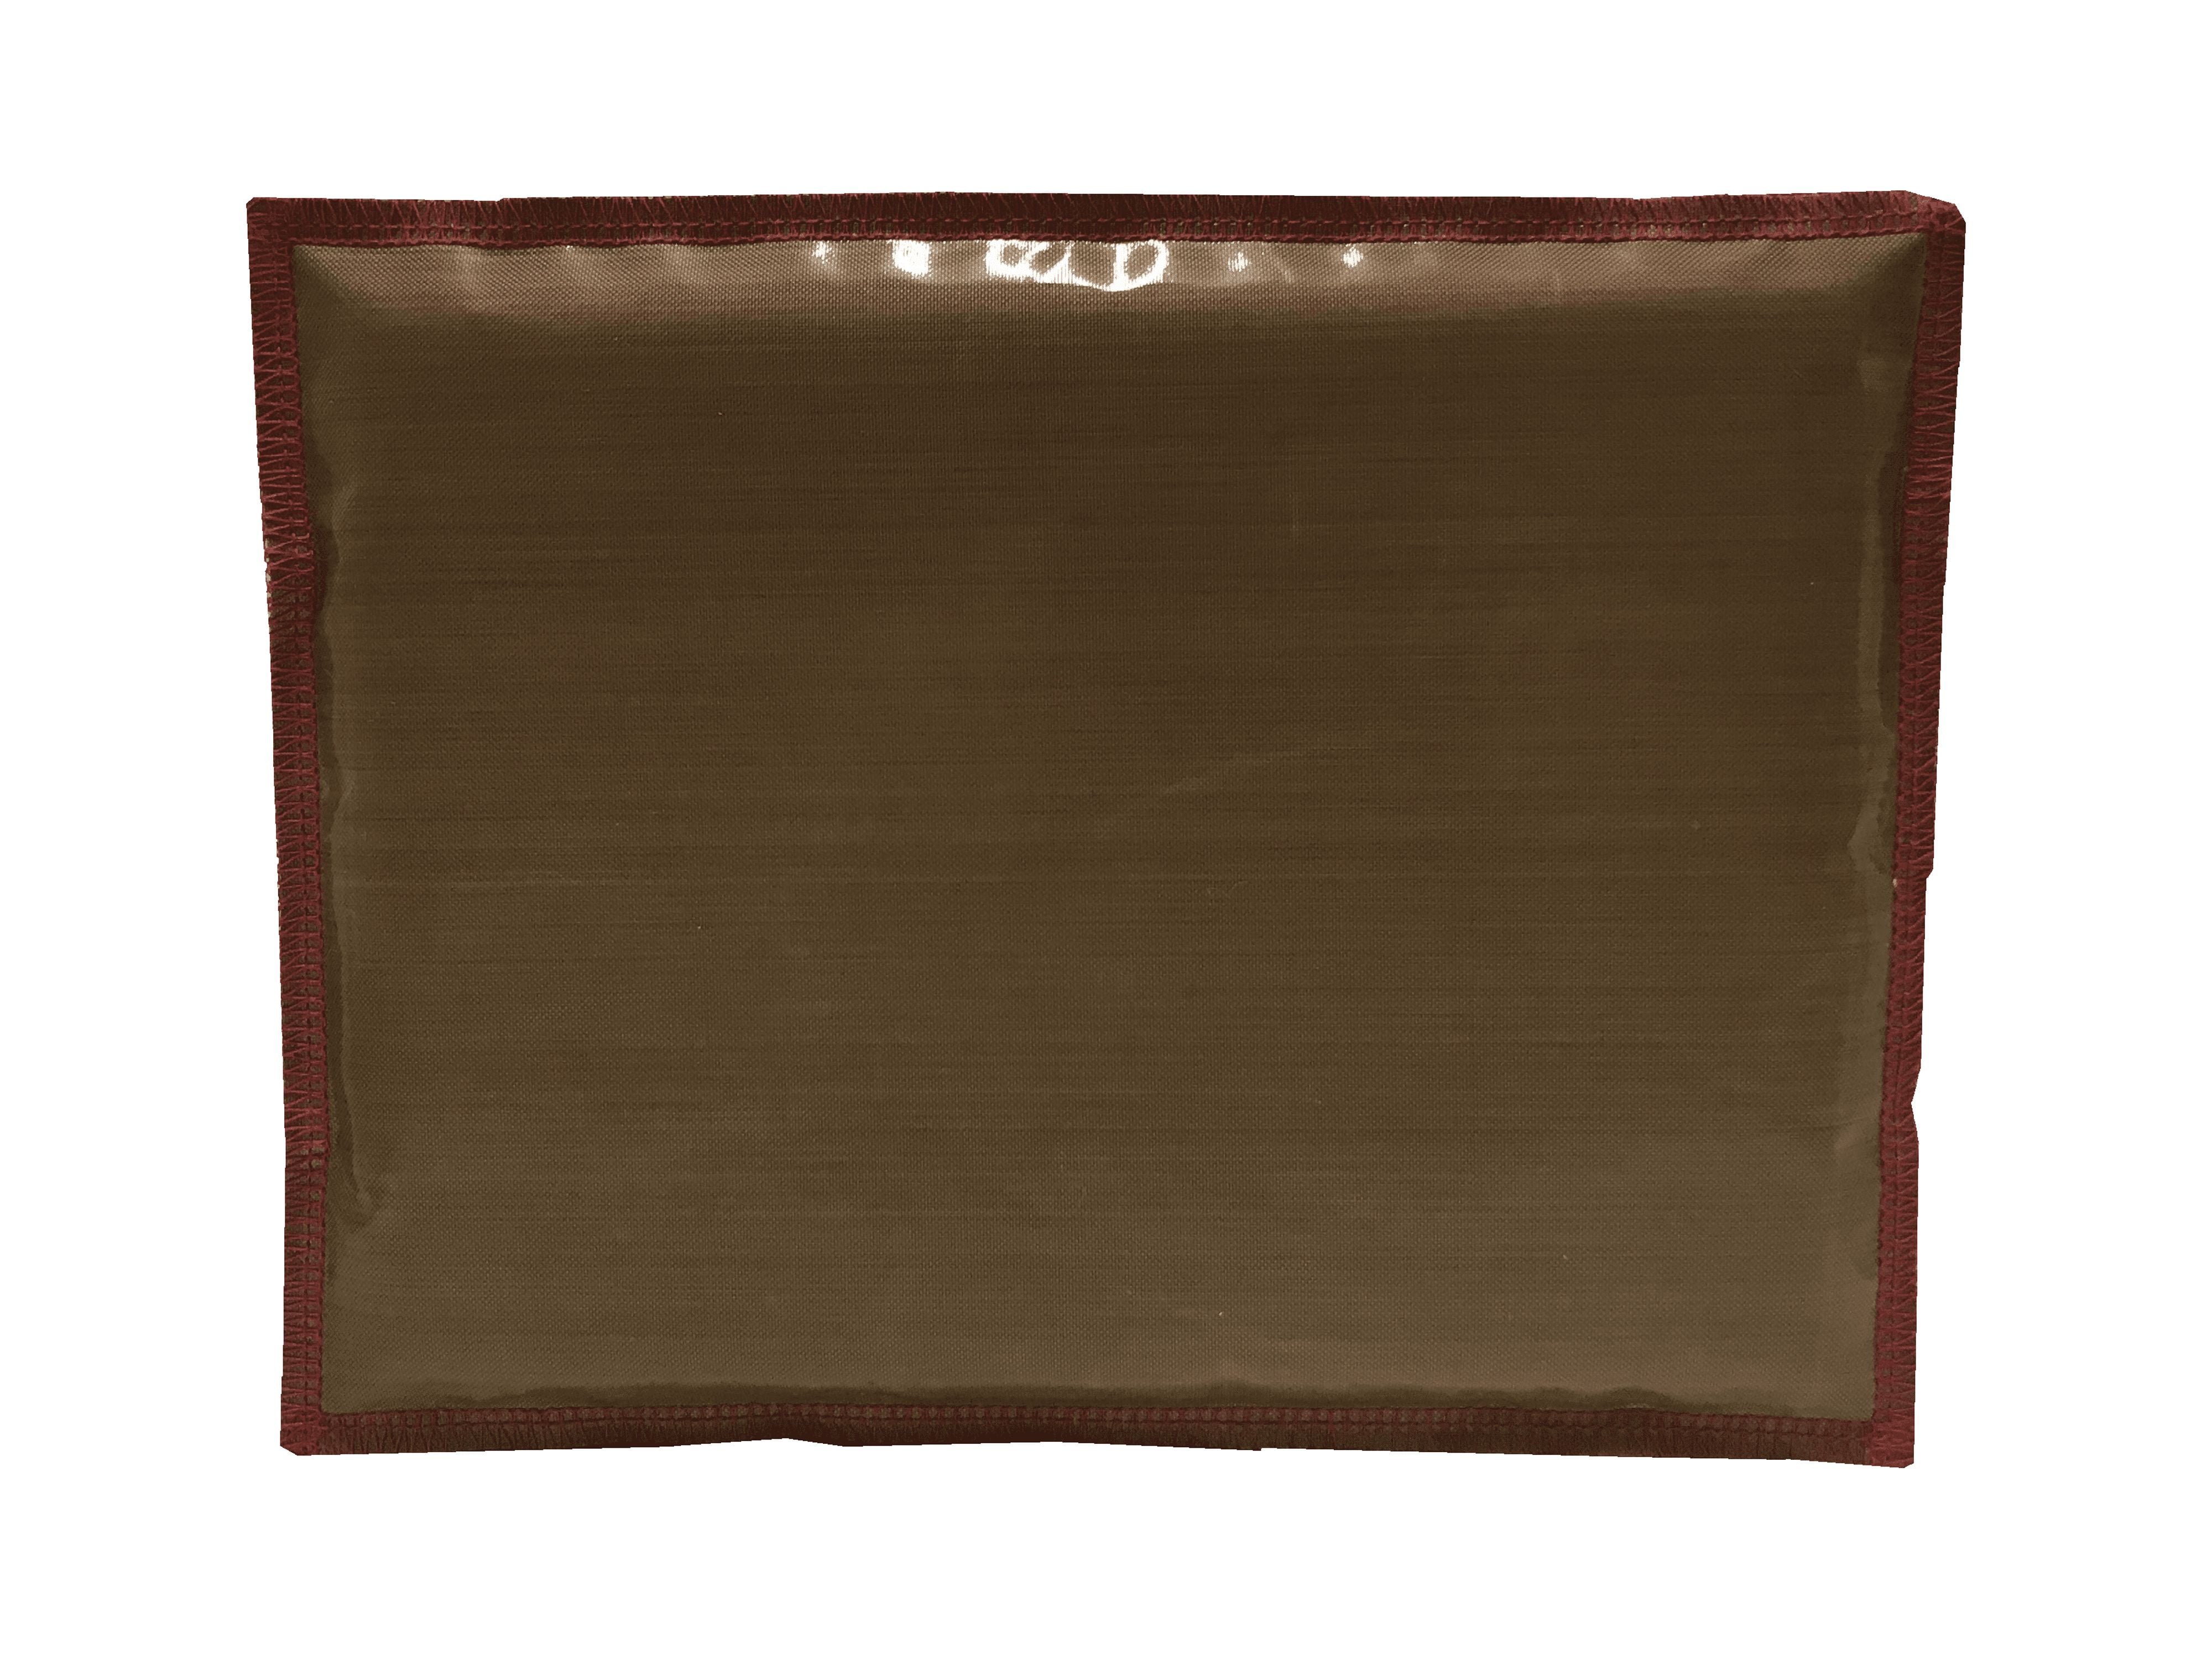 Heat Transfer Pillow 16x20